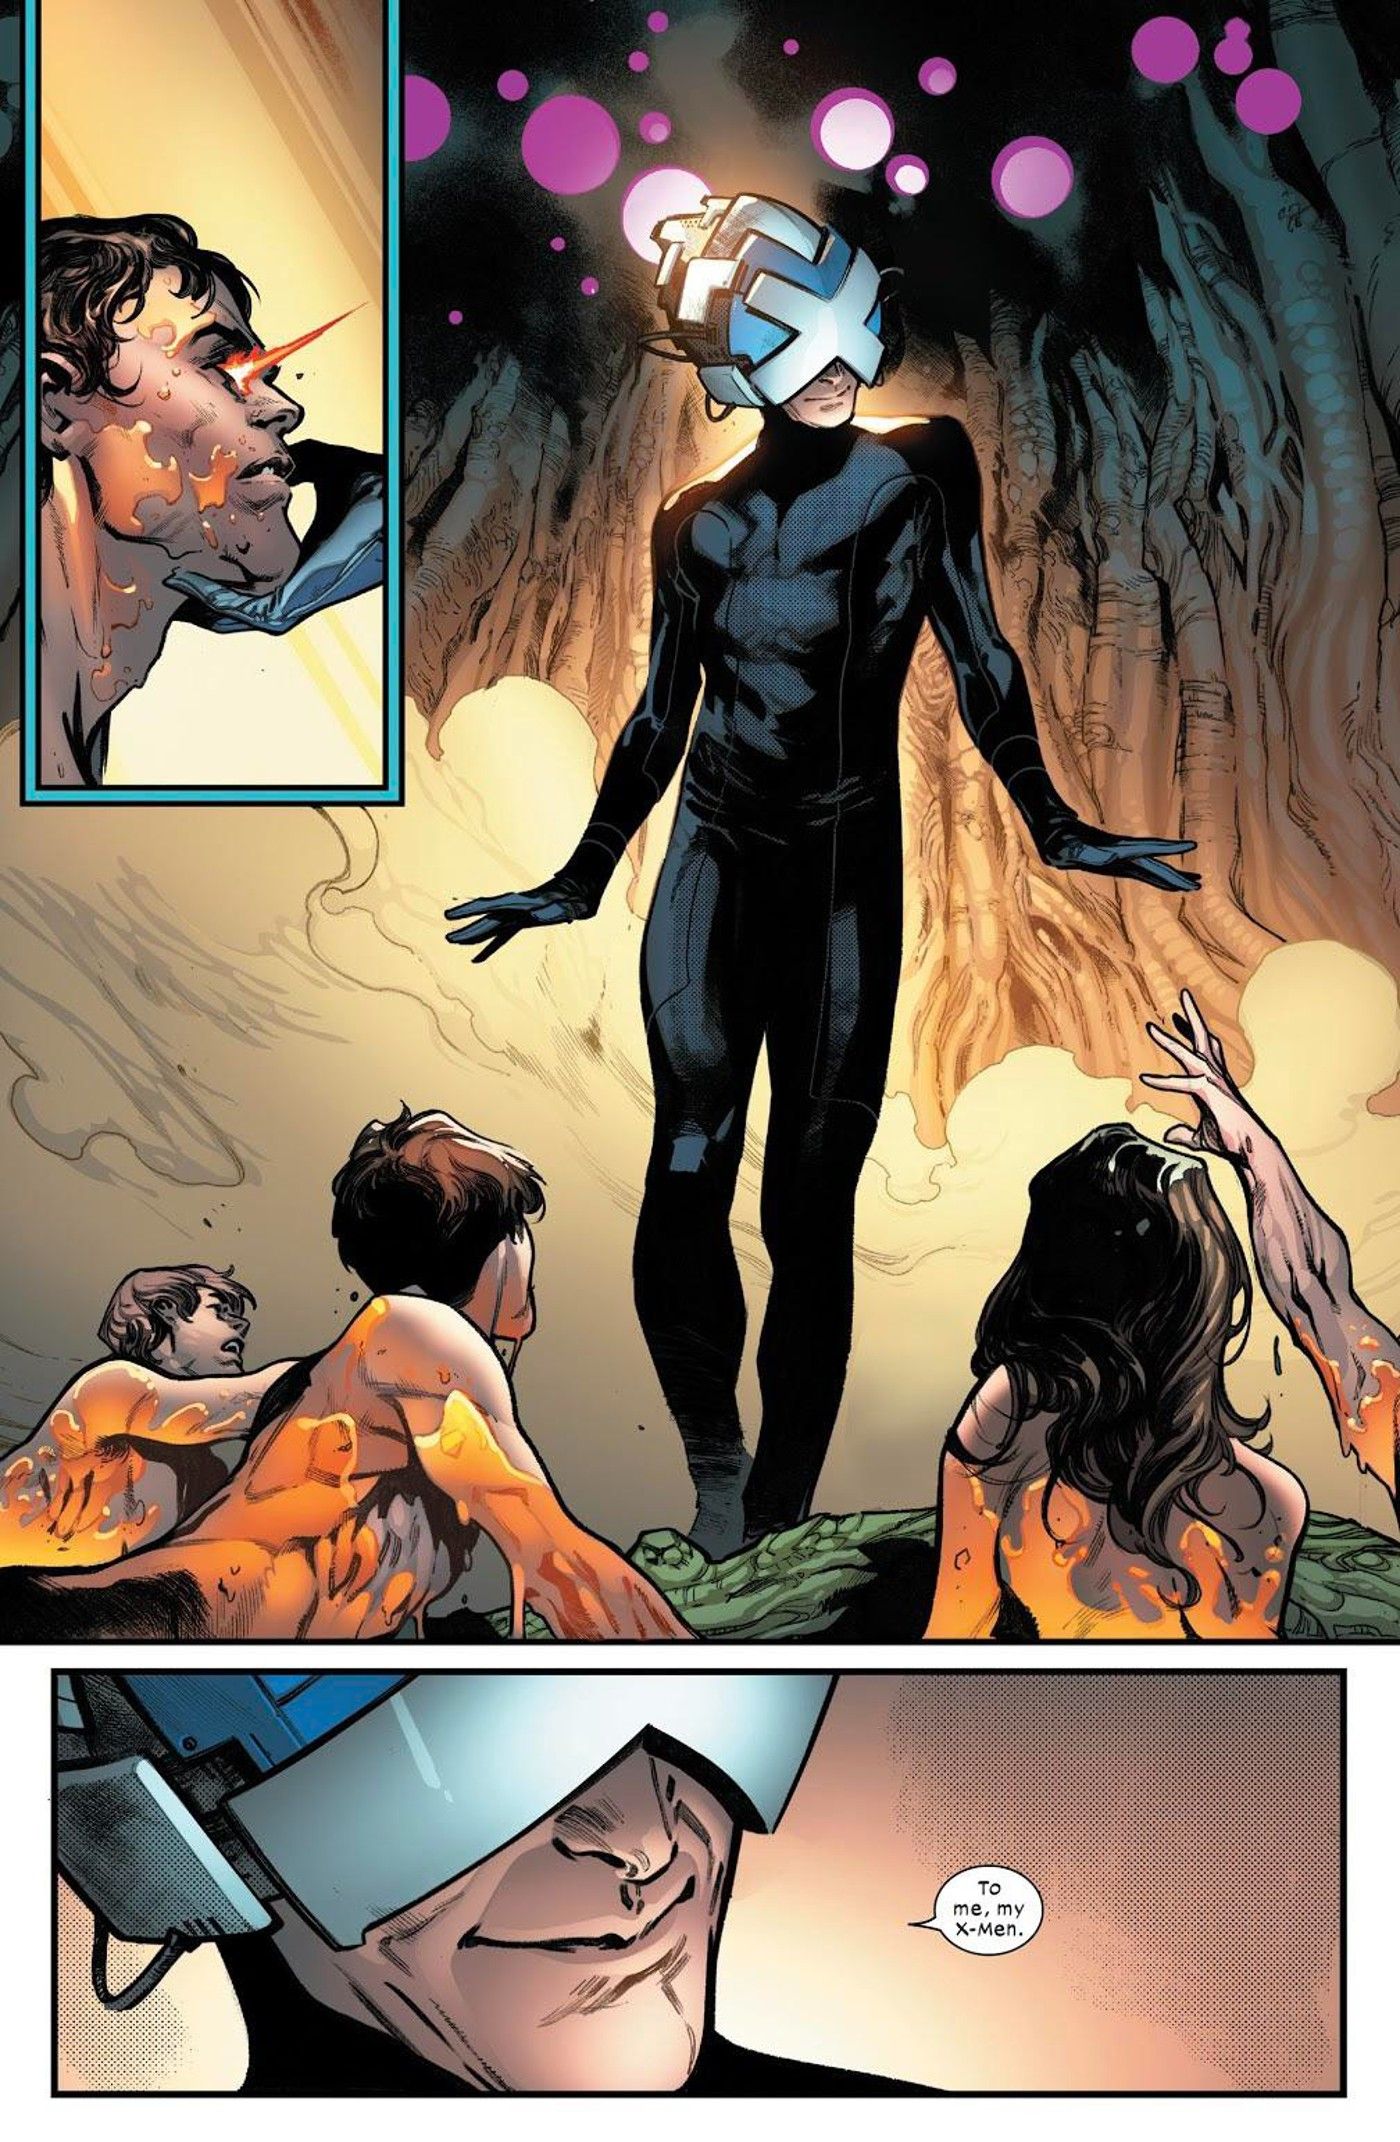 Primeira ressurreição da Era Krakoan, Charles diz 'Para mim, meus X-Men'